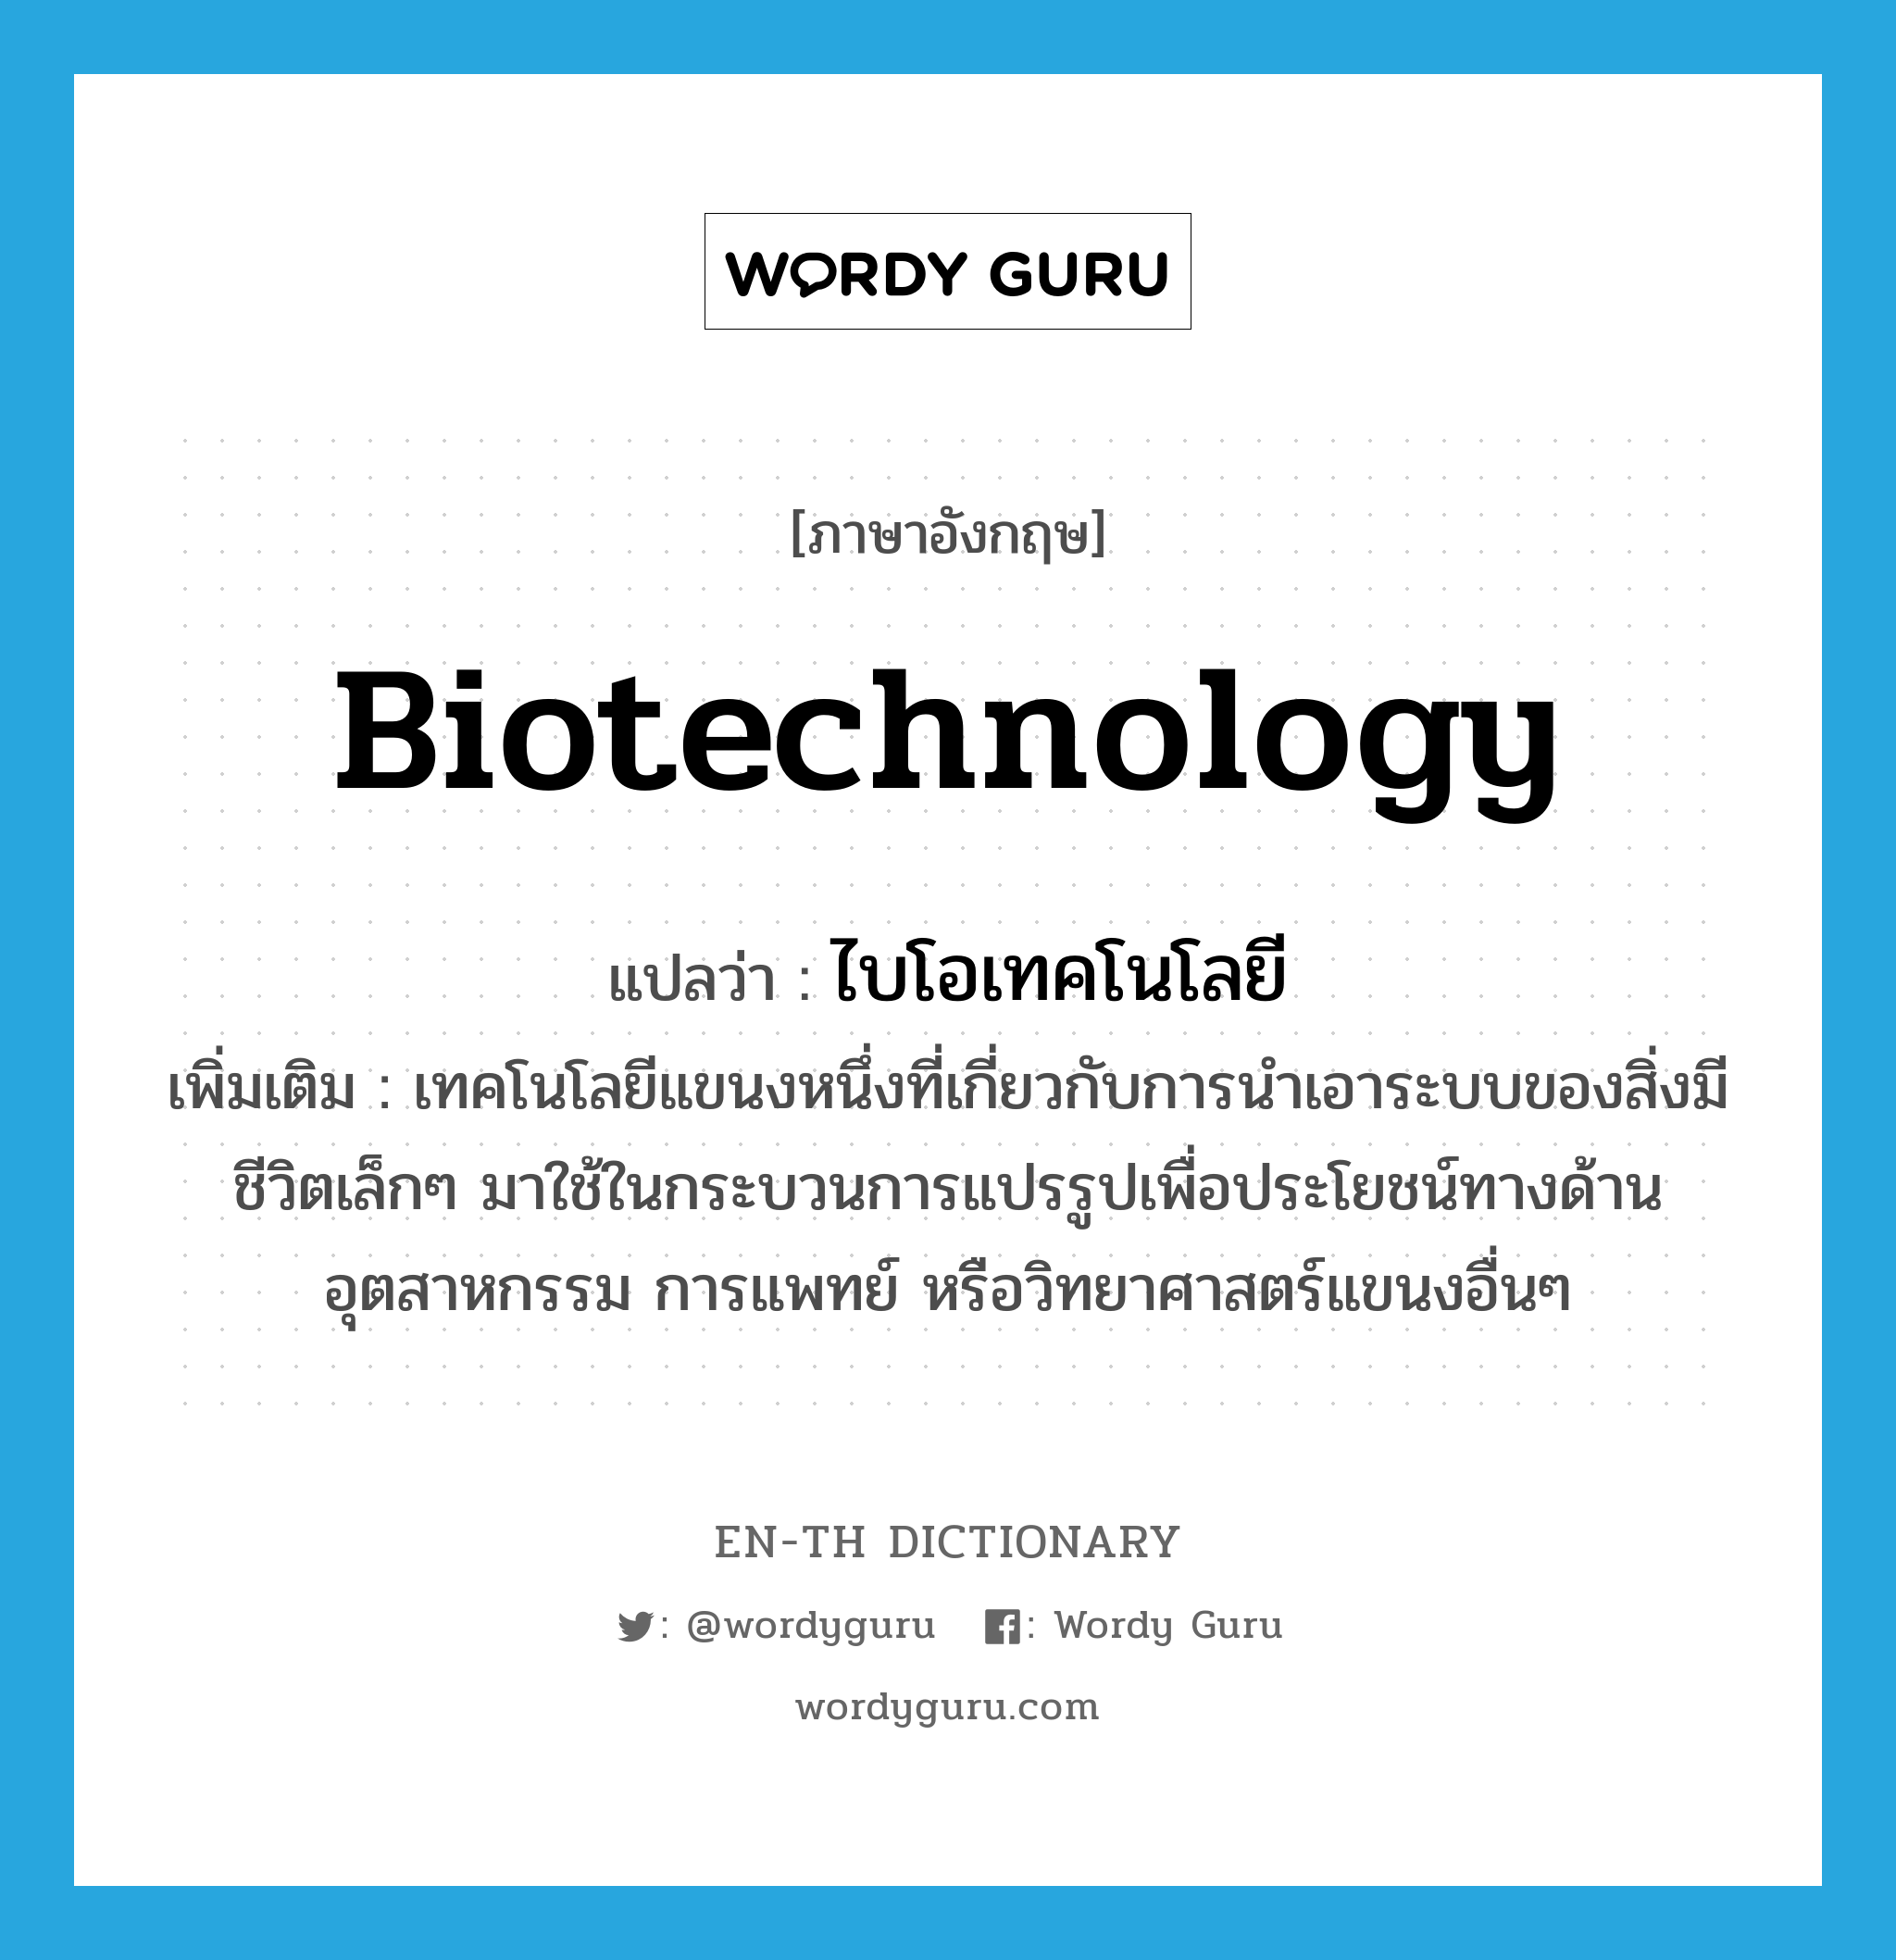 ไบโอเทคโนโลยี ภาษาอังกฤษ?, คำศัพท์ภาษาอังกฤษ ไบโอเทคโนโลยี แปลว่า biotechnology ประเภท N เพิ่มเติม เทคโนโลยีแขนงหนึ่งที่เกี่ยวกับการนำเอาระบบของสิ่งมีชีวิตเล็กๆ มาใช้ในกระบวนการแปรรูปเพื่อประโยชน์ทางด้านอุตสาหกรรม การแพทย์ หรือวิทยาศาสตร์แขนงอื่นๆ หมวด N